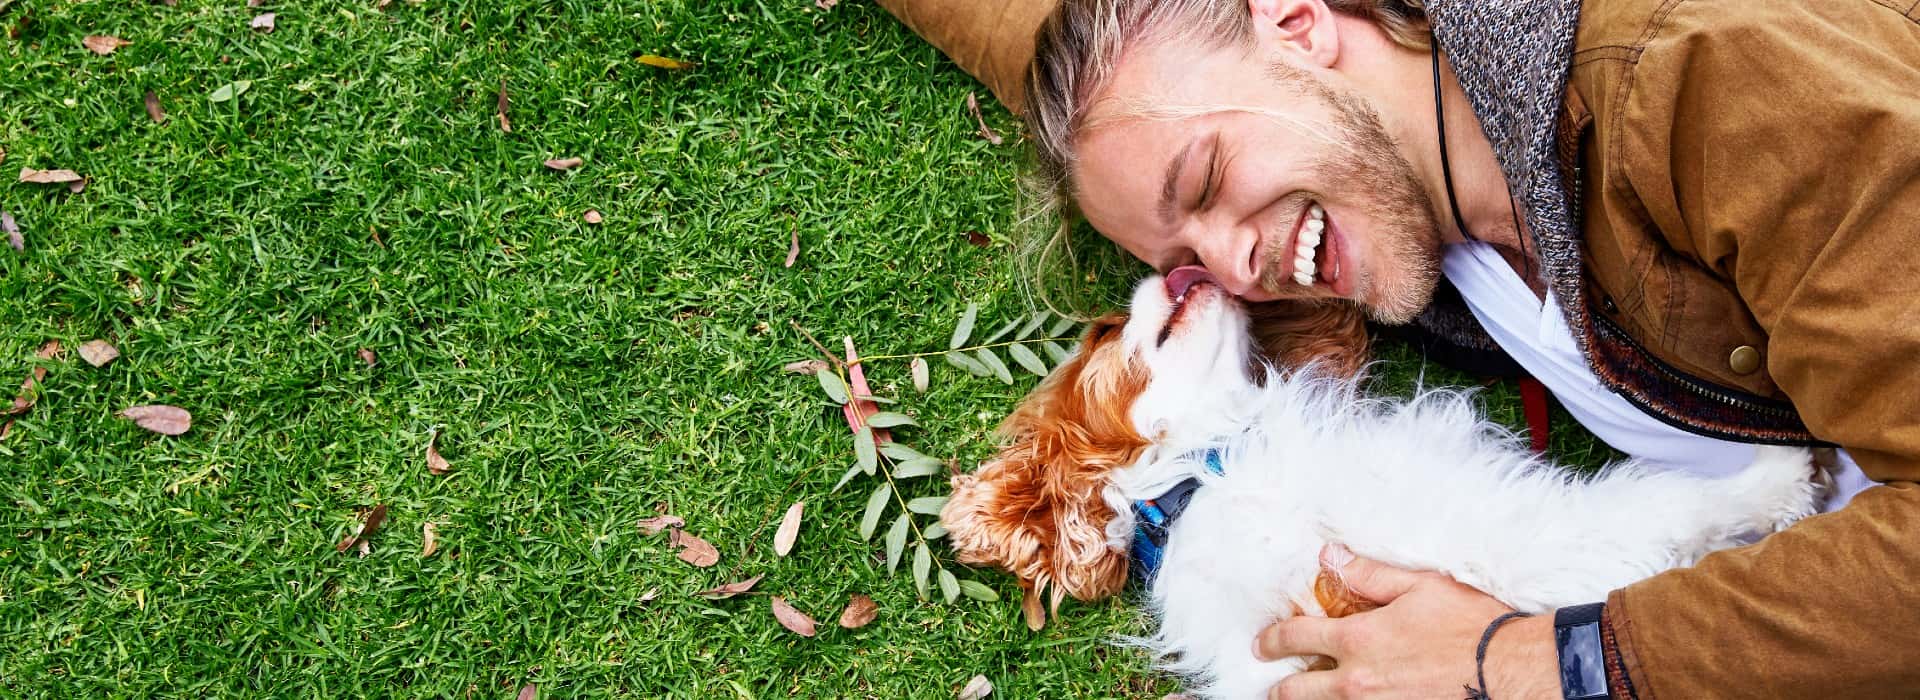 一个人躺在草地上，带着一只棕白相间的小狗. 狗在舔男人的脸，男人在笑.